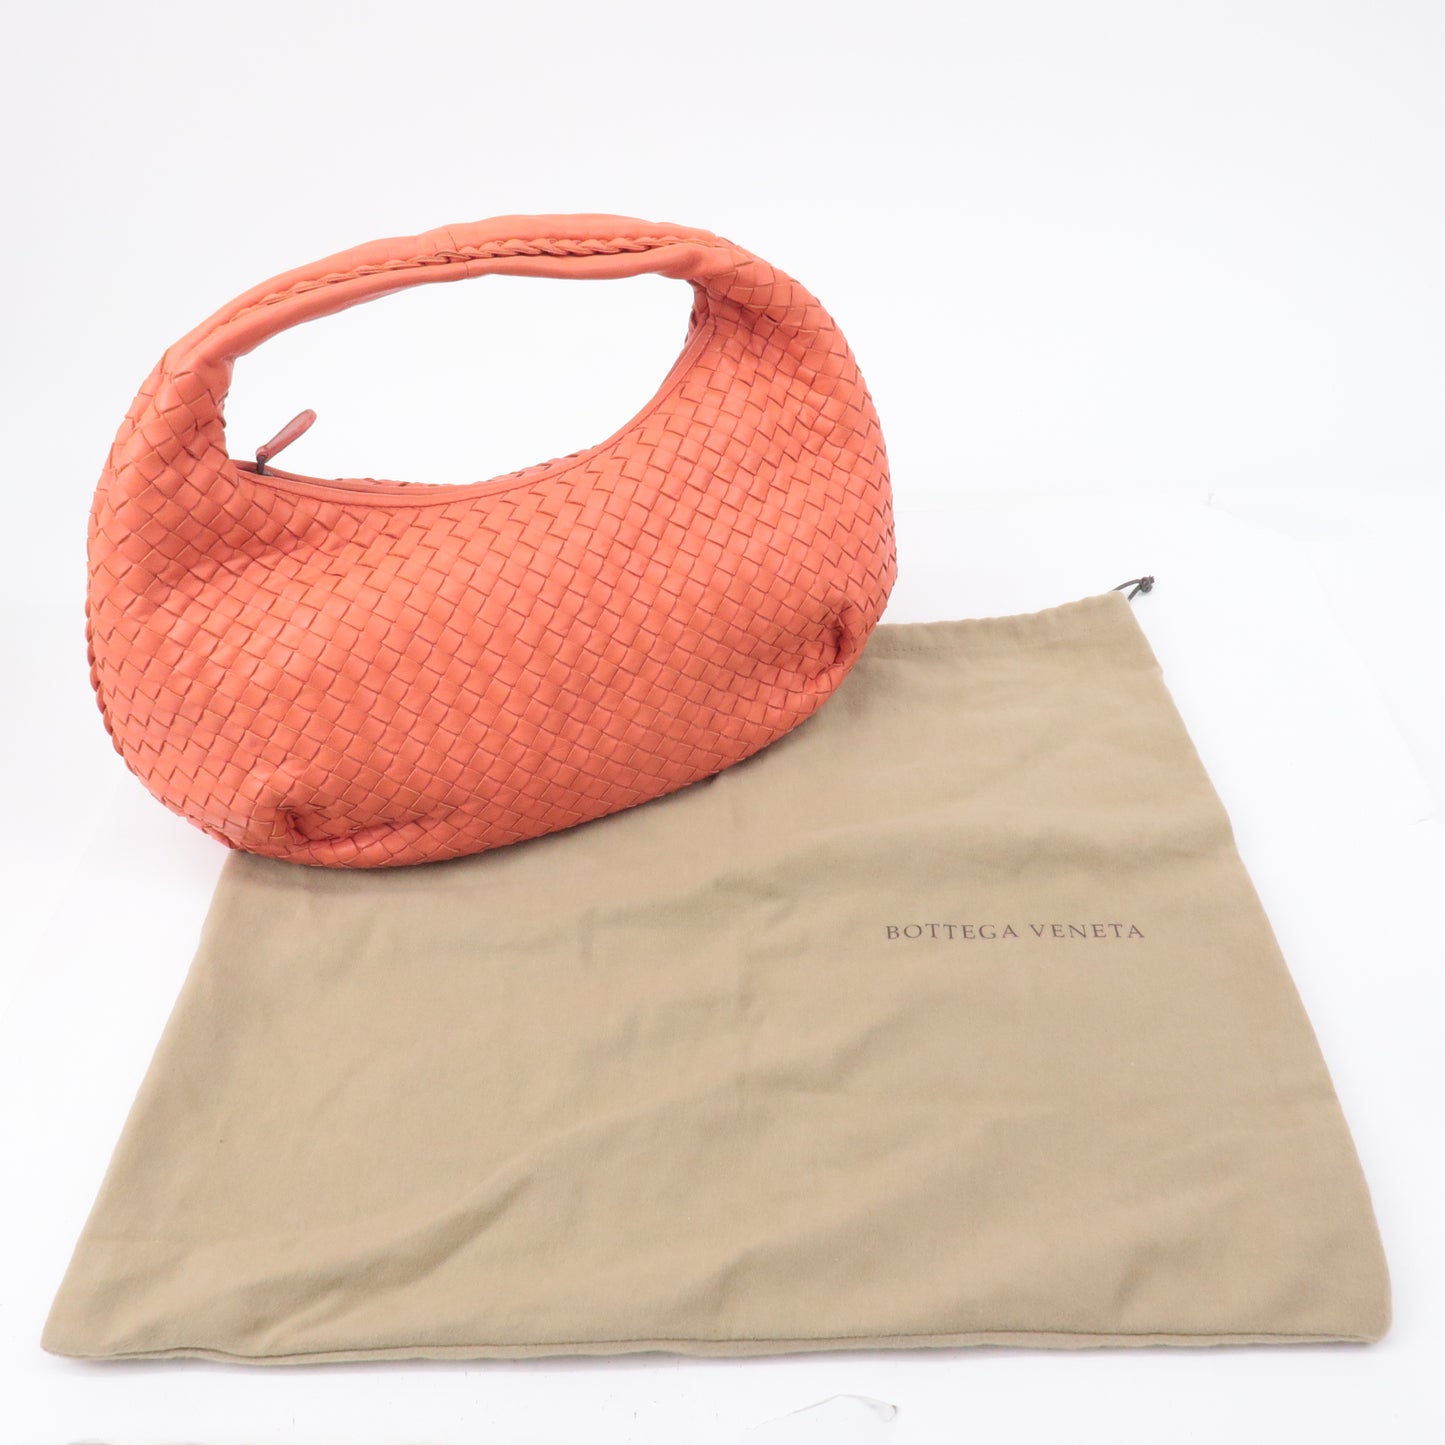 BOTTEGA VENETA Intrecciato Hobo Leather Shoulder Bag Pink 232499